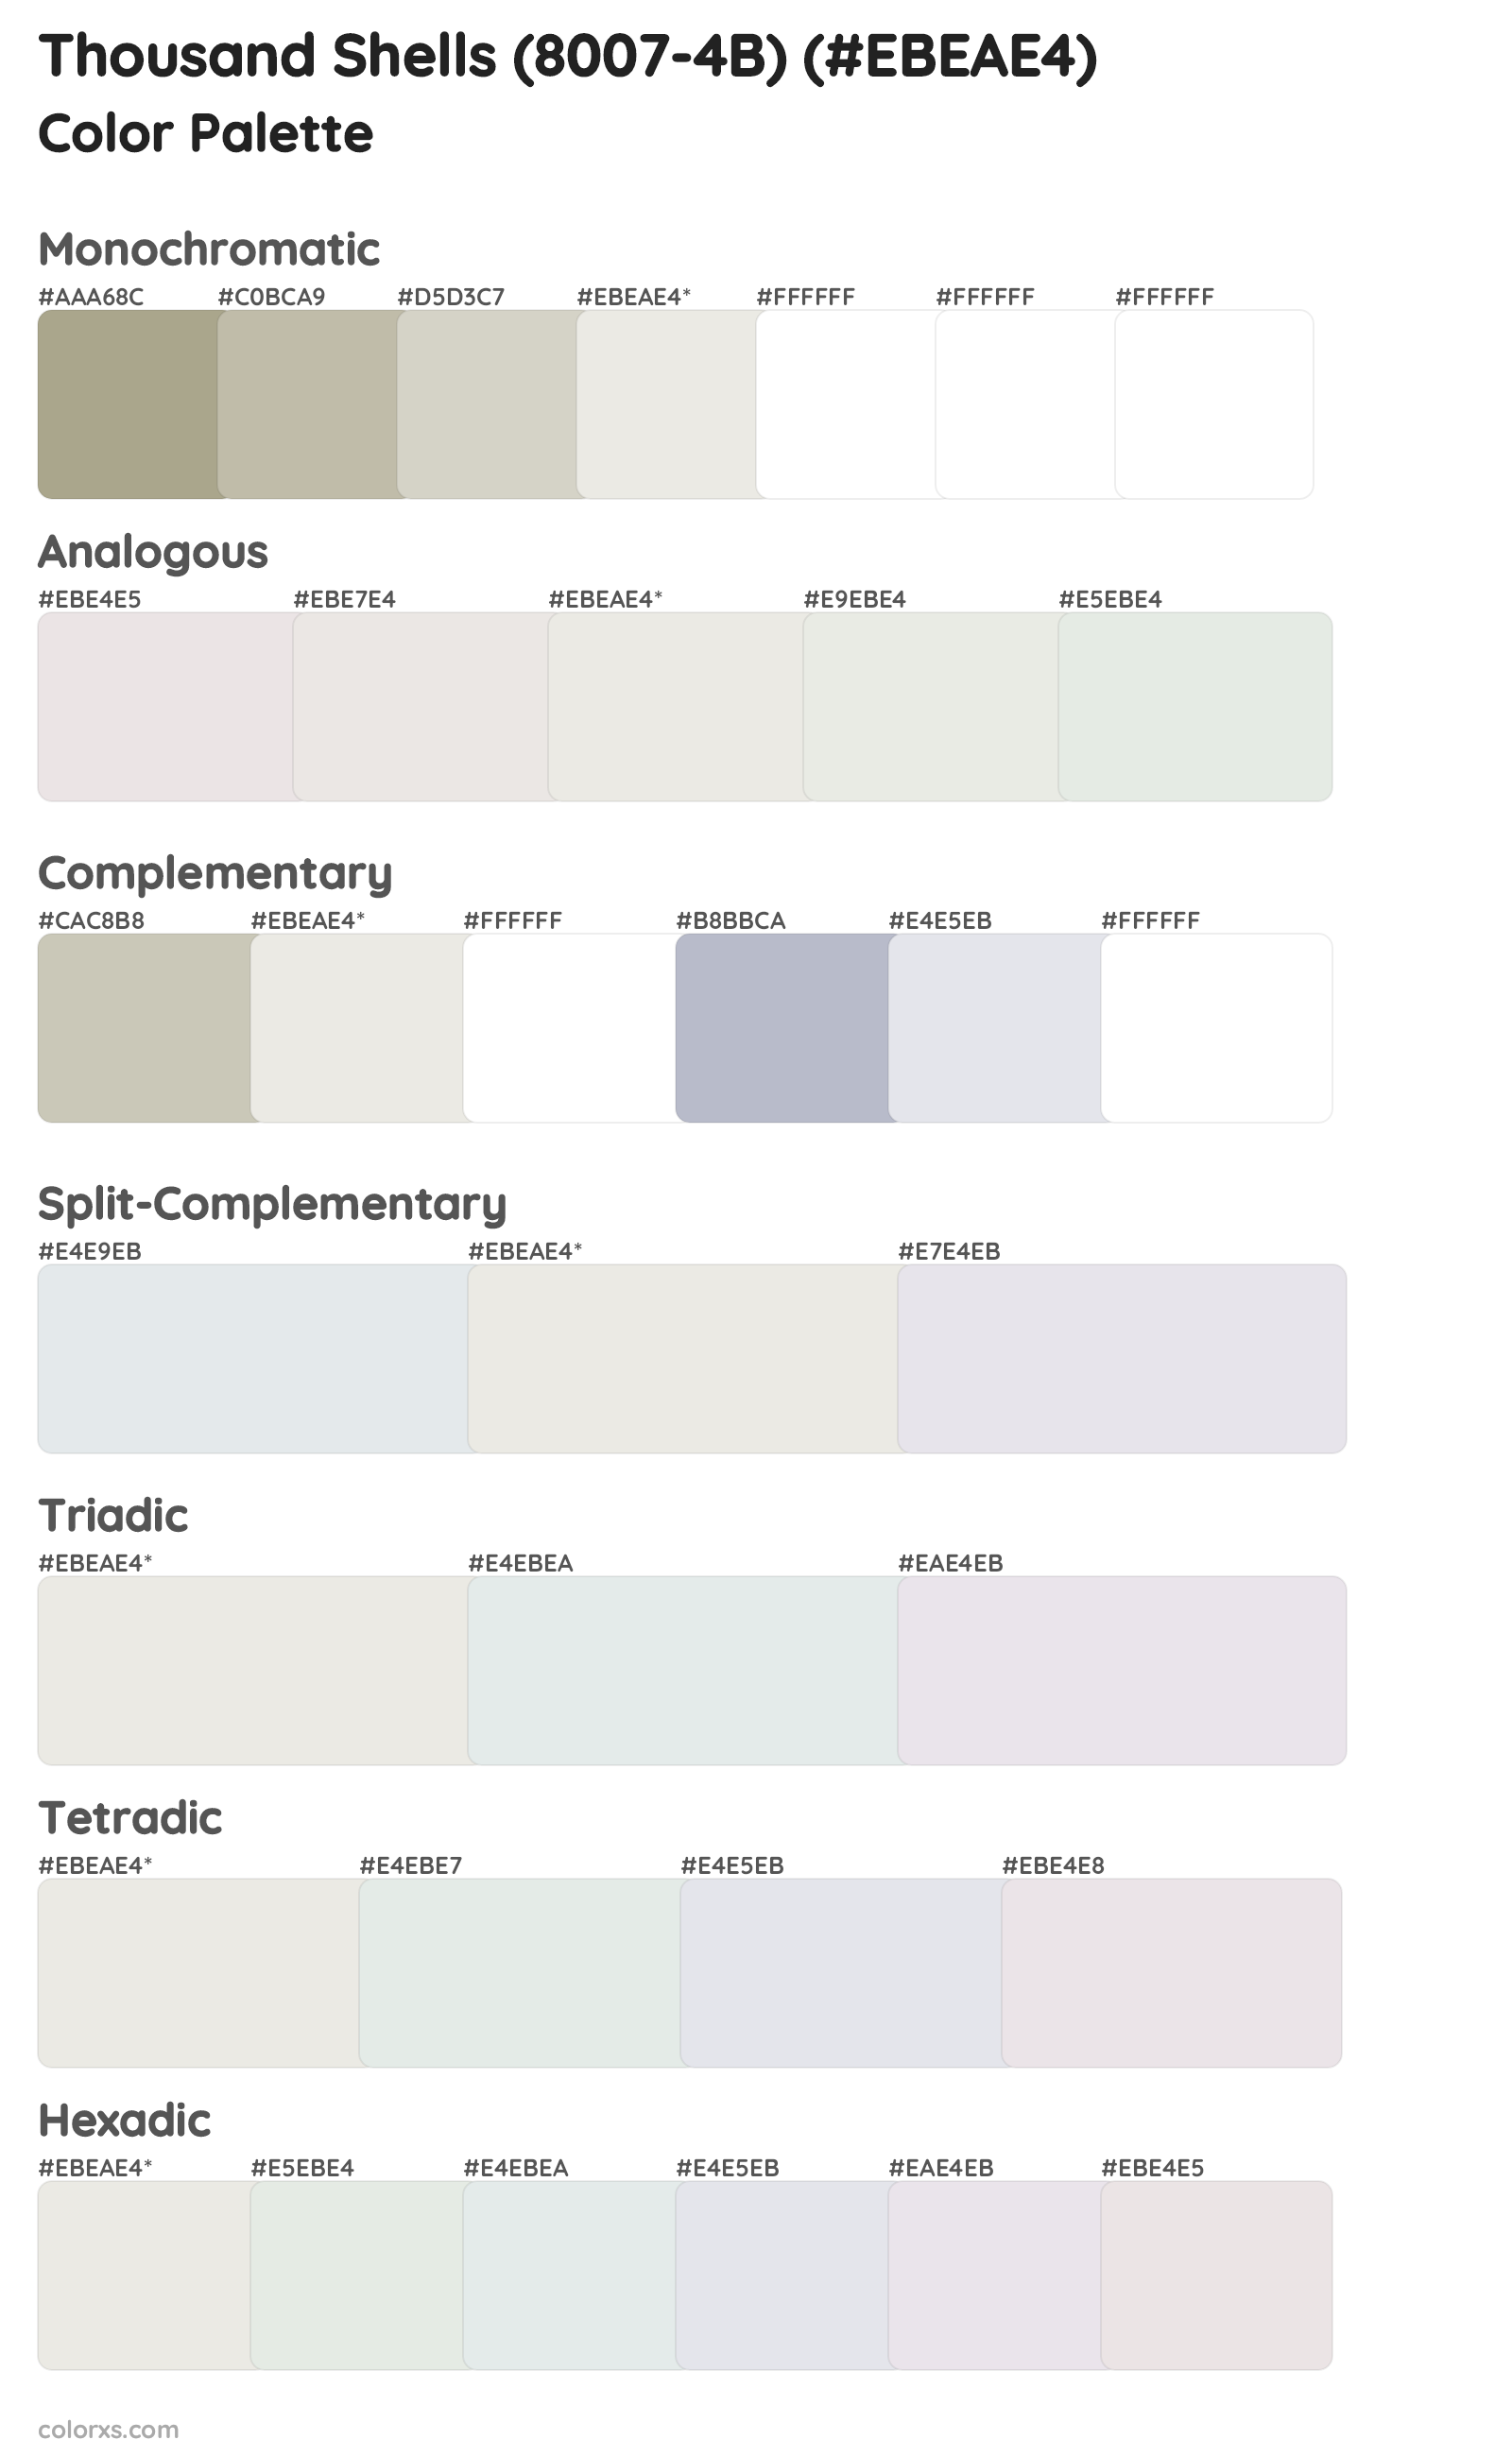 Thousand Shells (8007-4B) Color Scheme Palettes